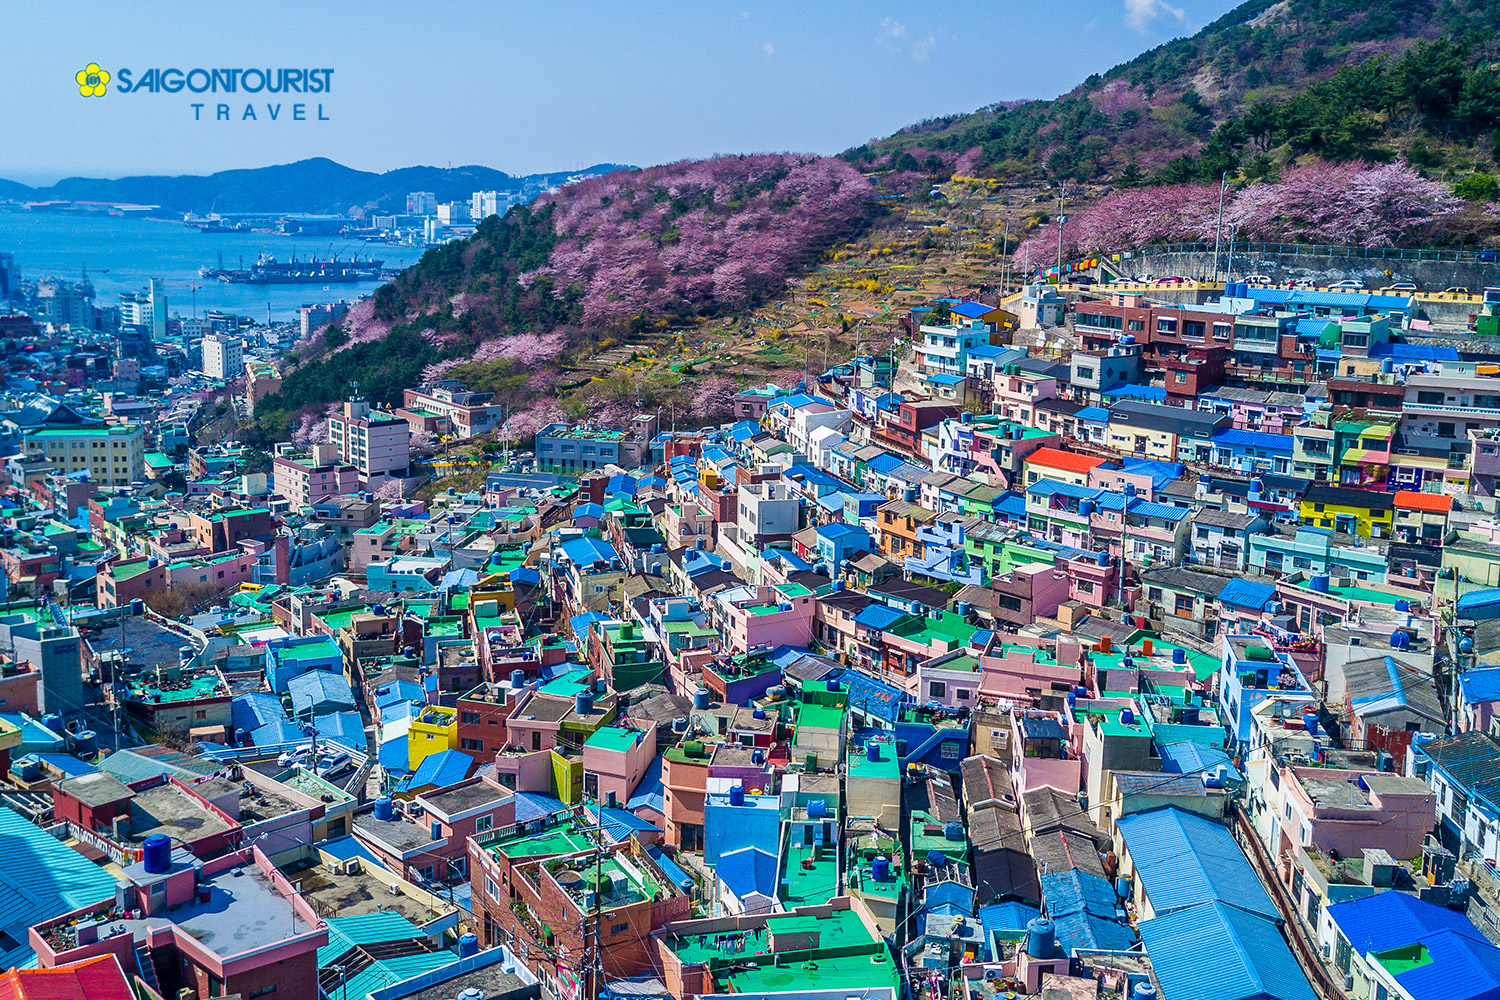 Du Lịch Hàn Quốc [Busan - Làng Gamcheon - Chợ Cá Jagalchi - Bảo Tàng Samjin - Ktx - Seoul - Nami  Everland - Nanta Show]